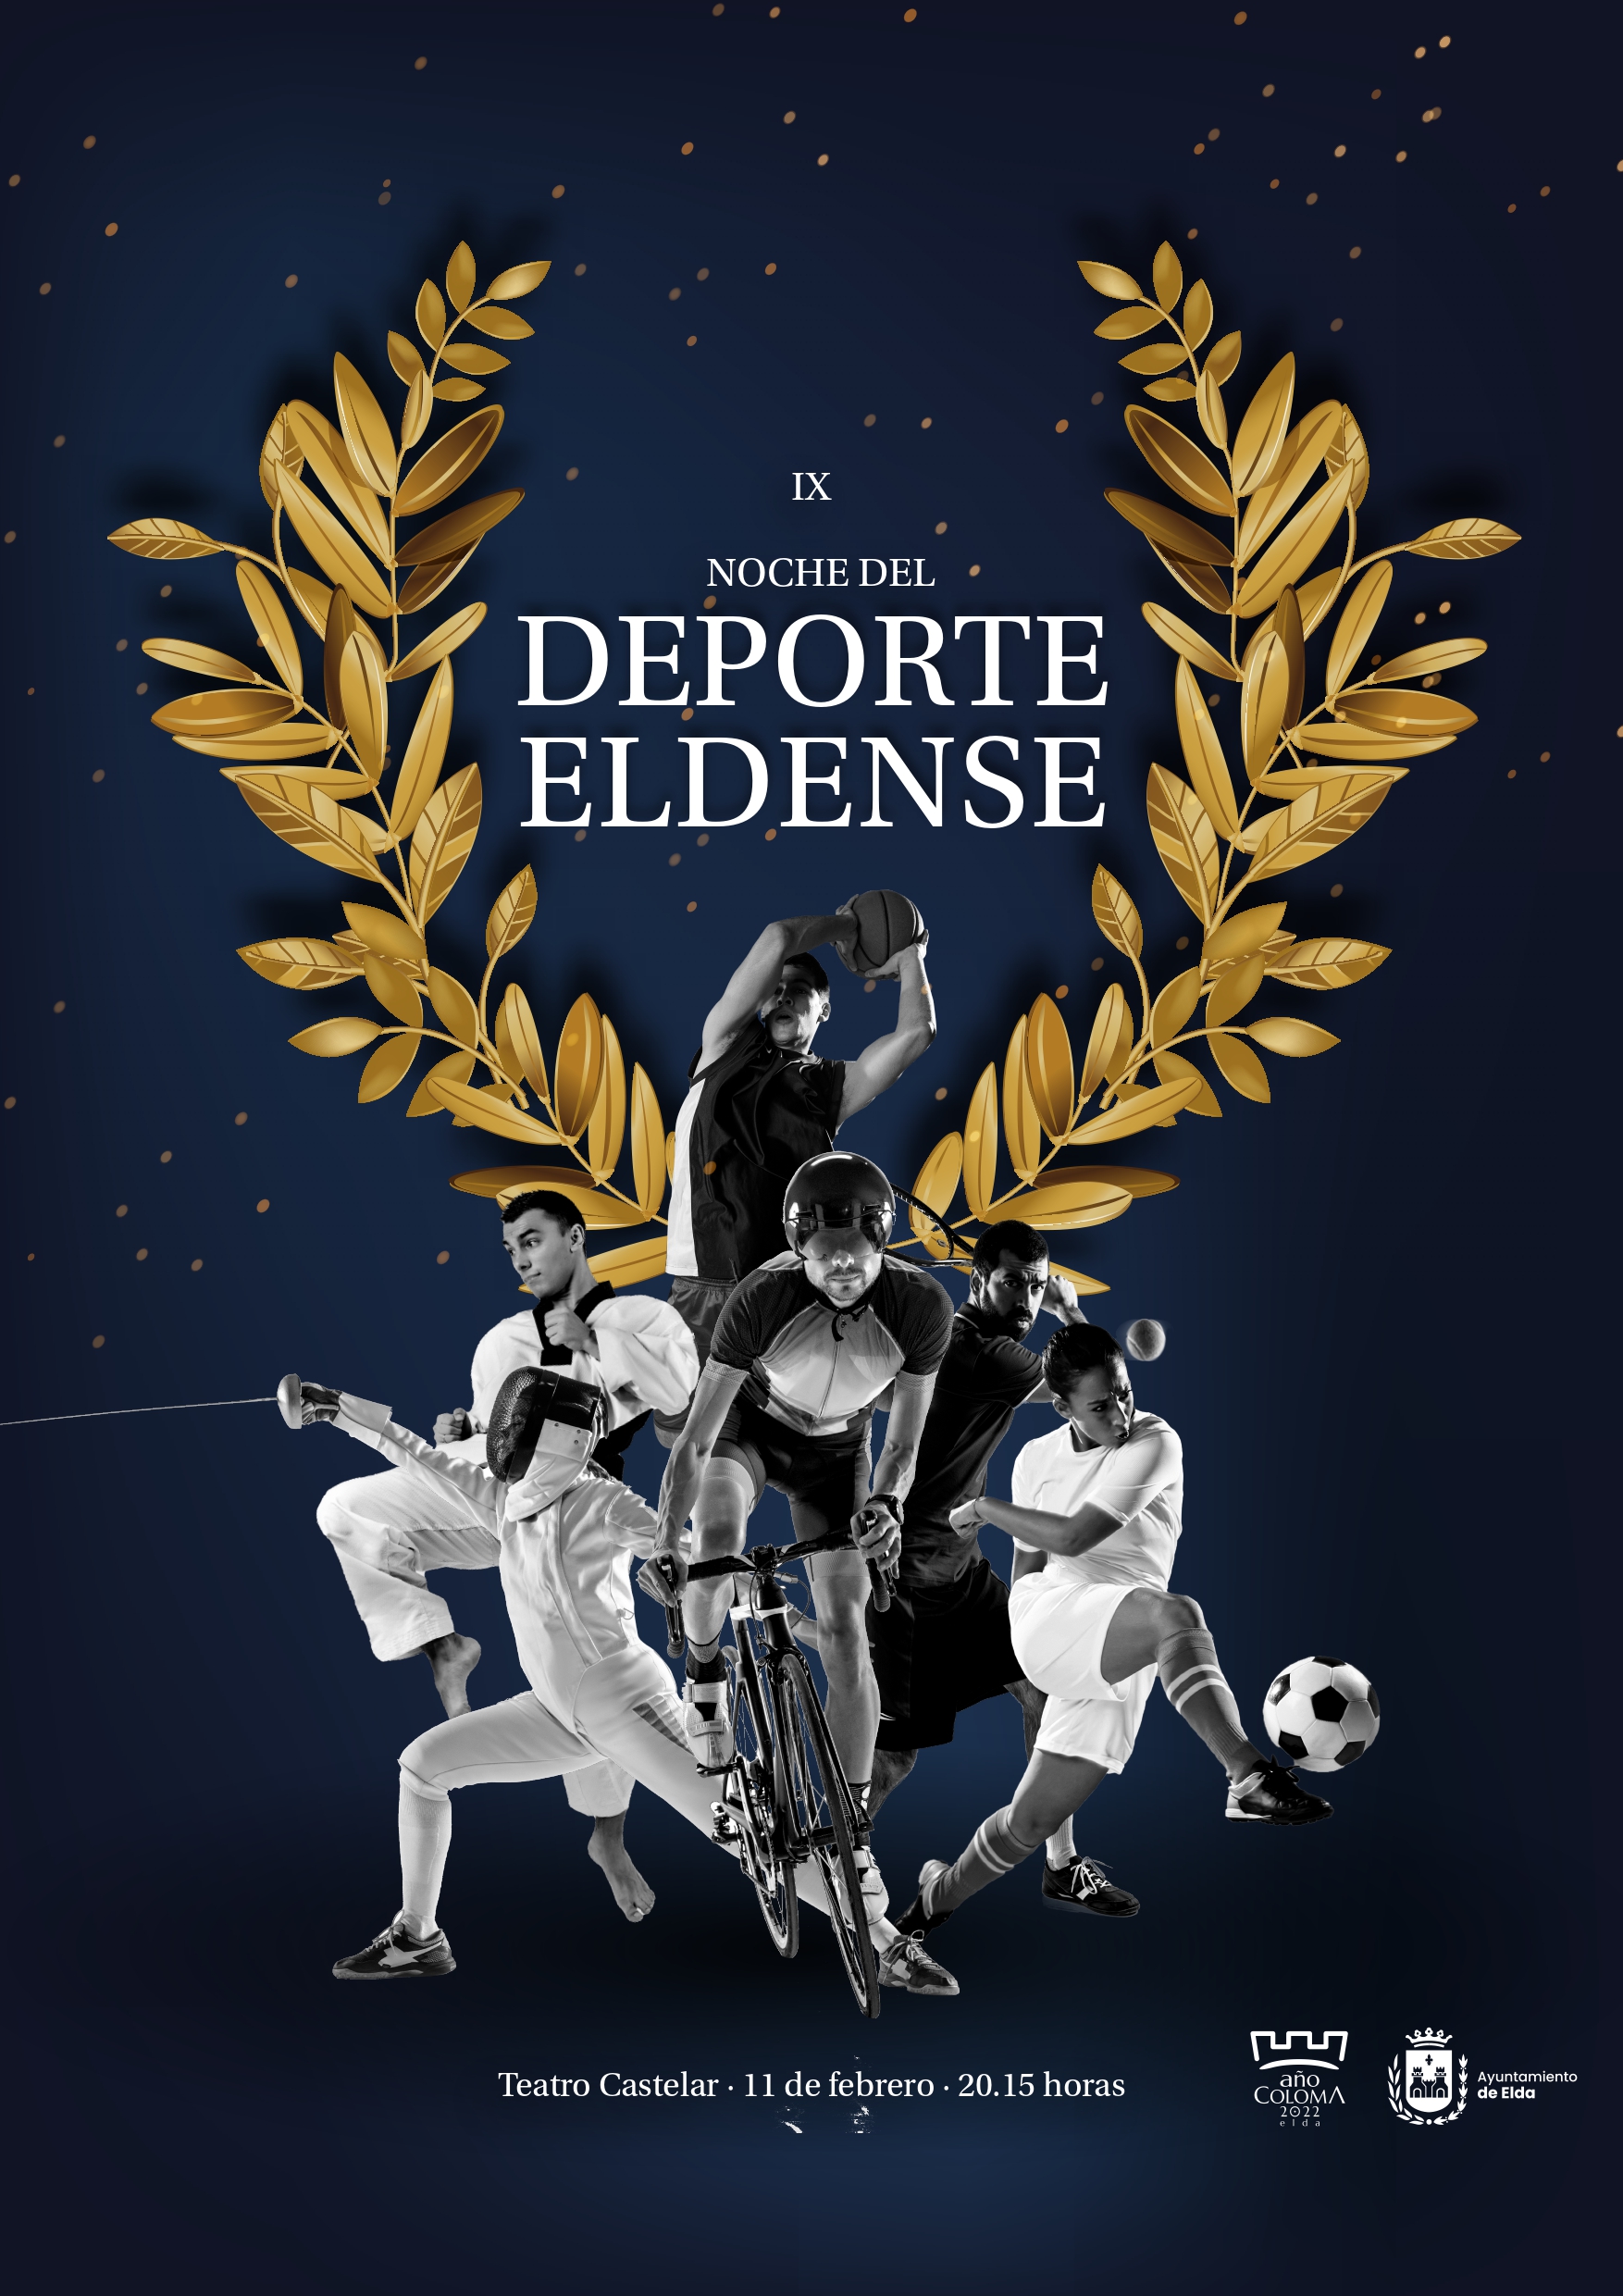 Elda ya tiene nominados y nominadas para la IX Noche del Deporte que se celebrará el viernes 11 de febrero en el Teatro Castelar